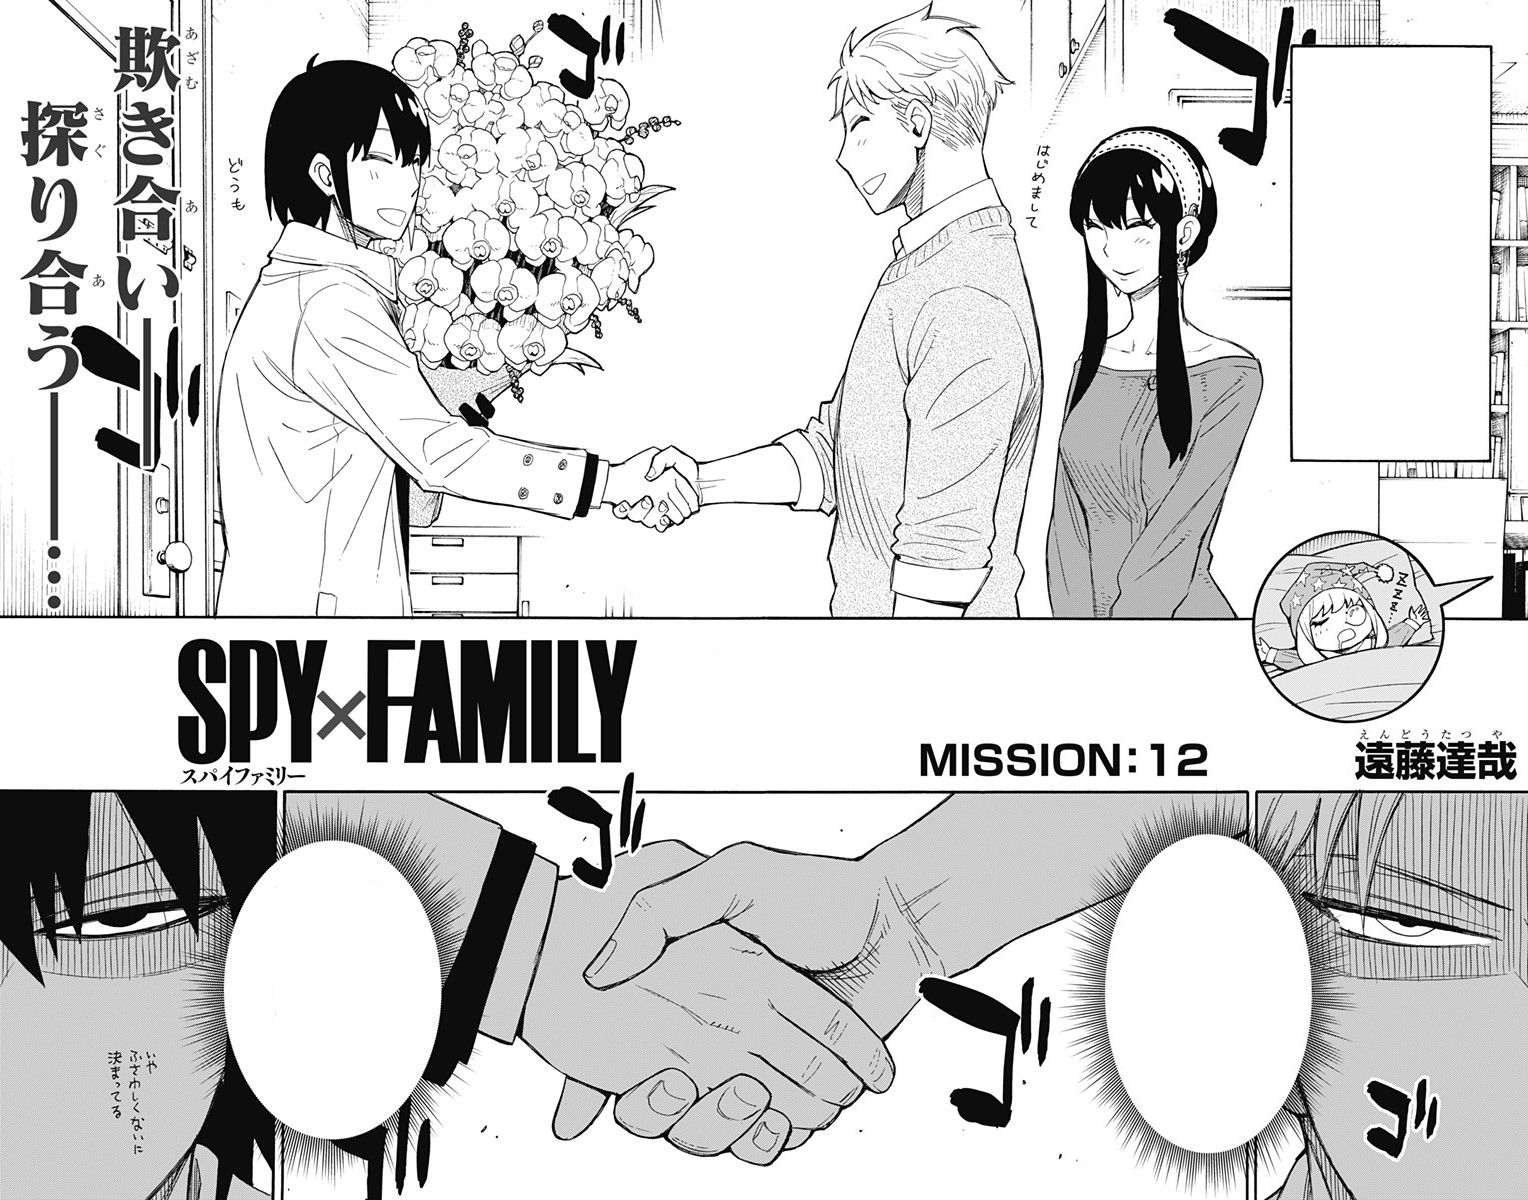 Chapter 12, Spy x Family Wiki